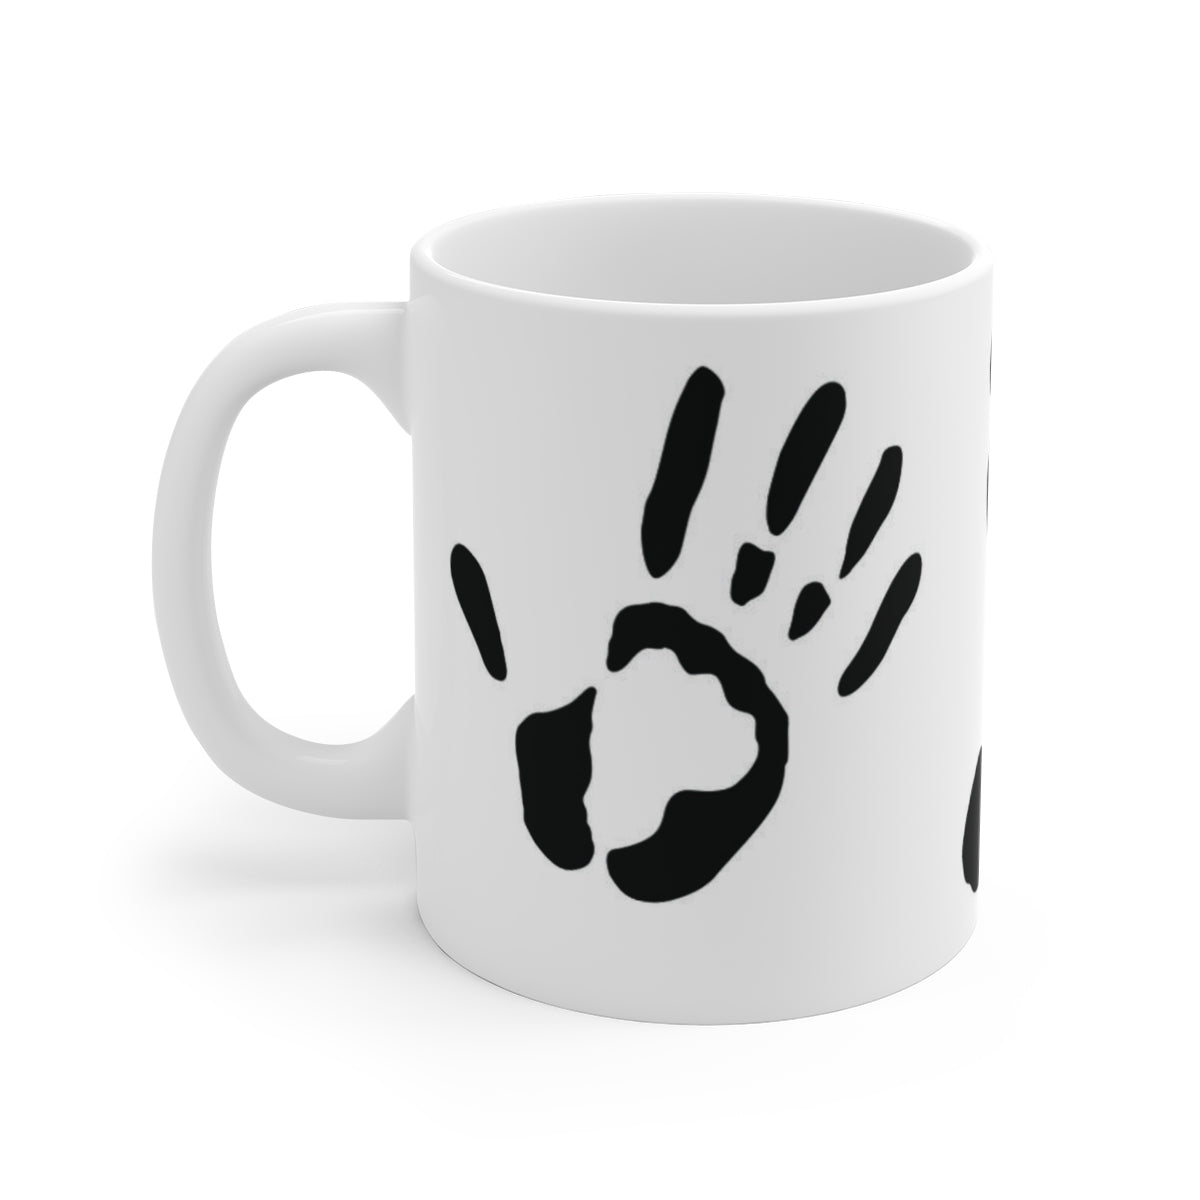 Five Toes Down Ceramic Mug